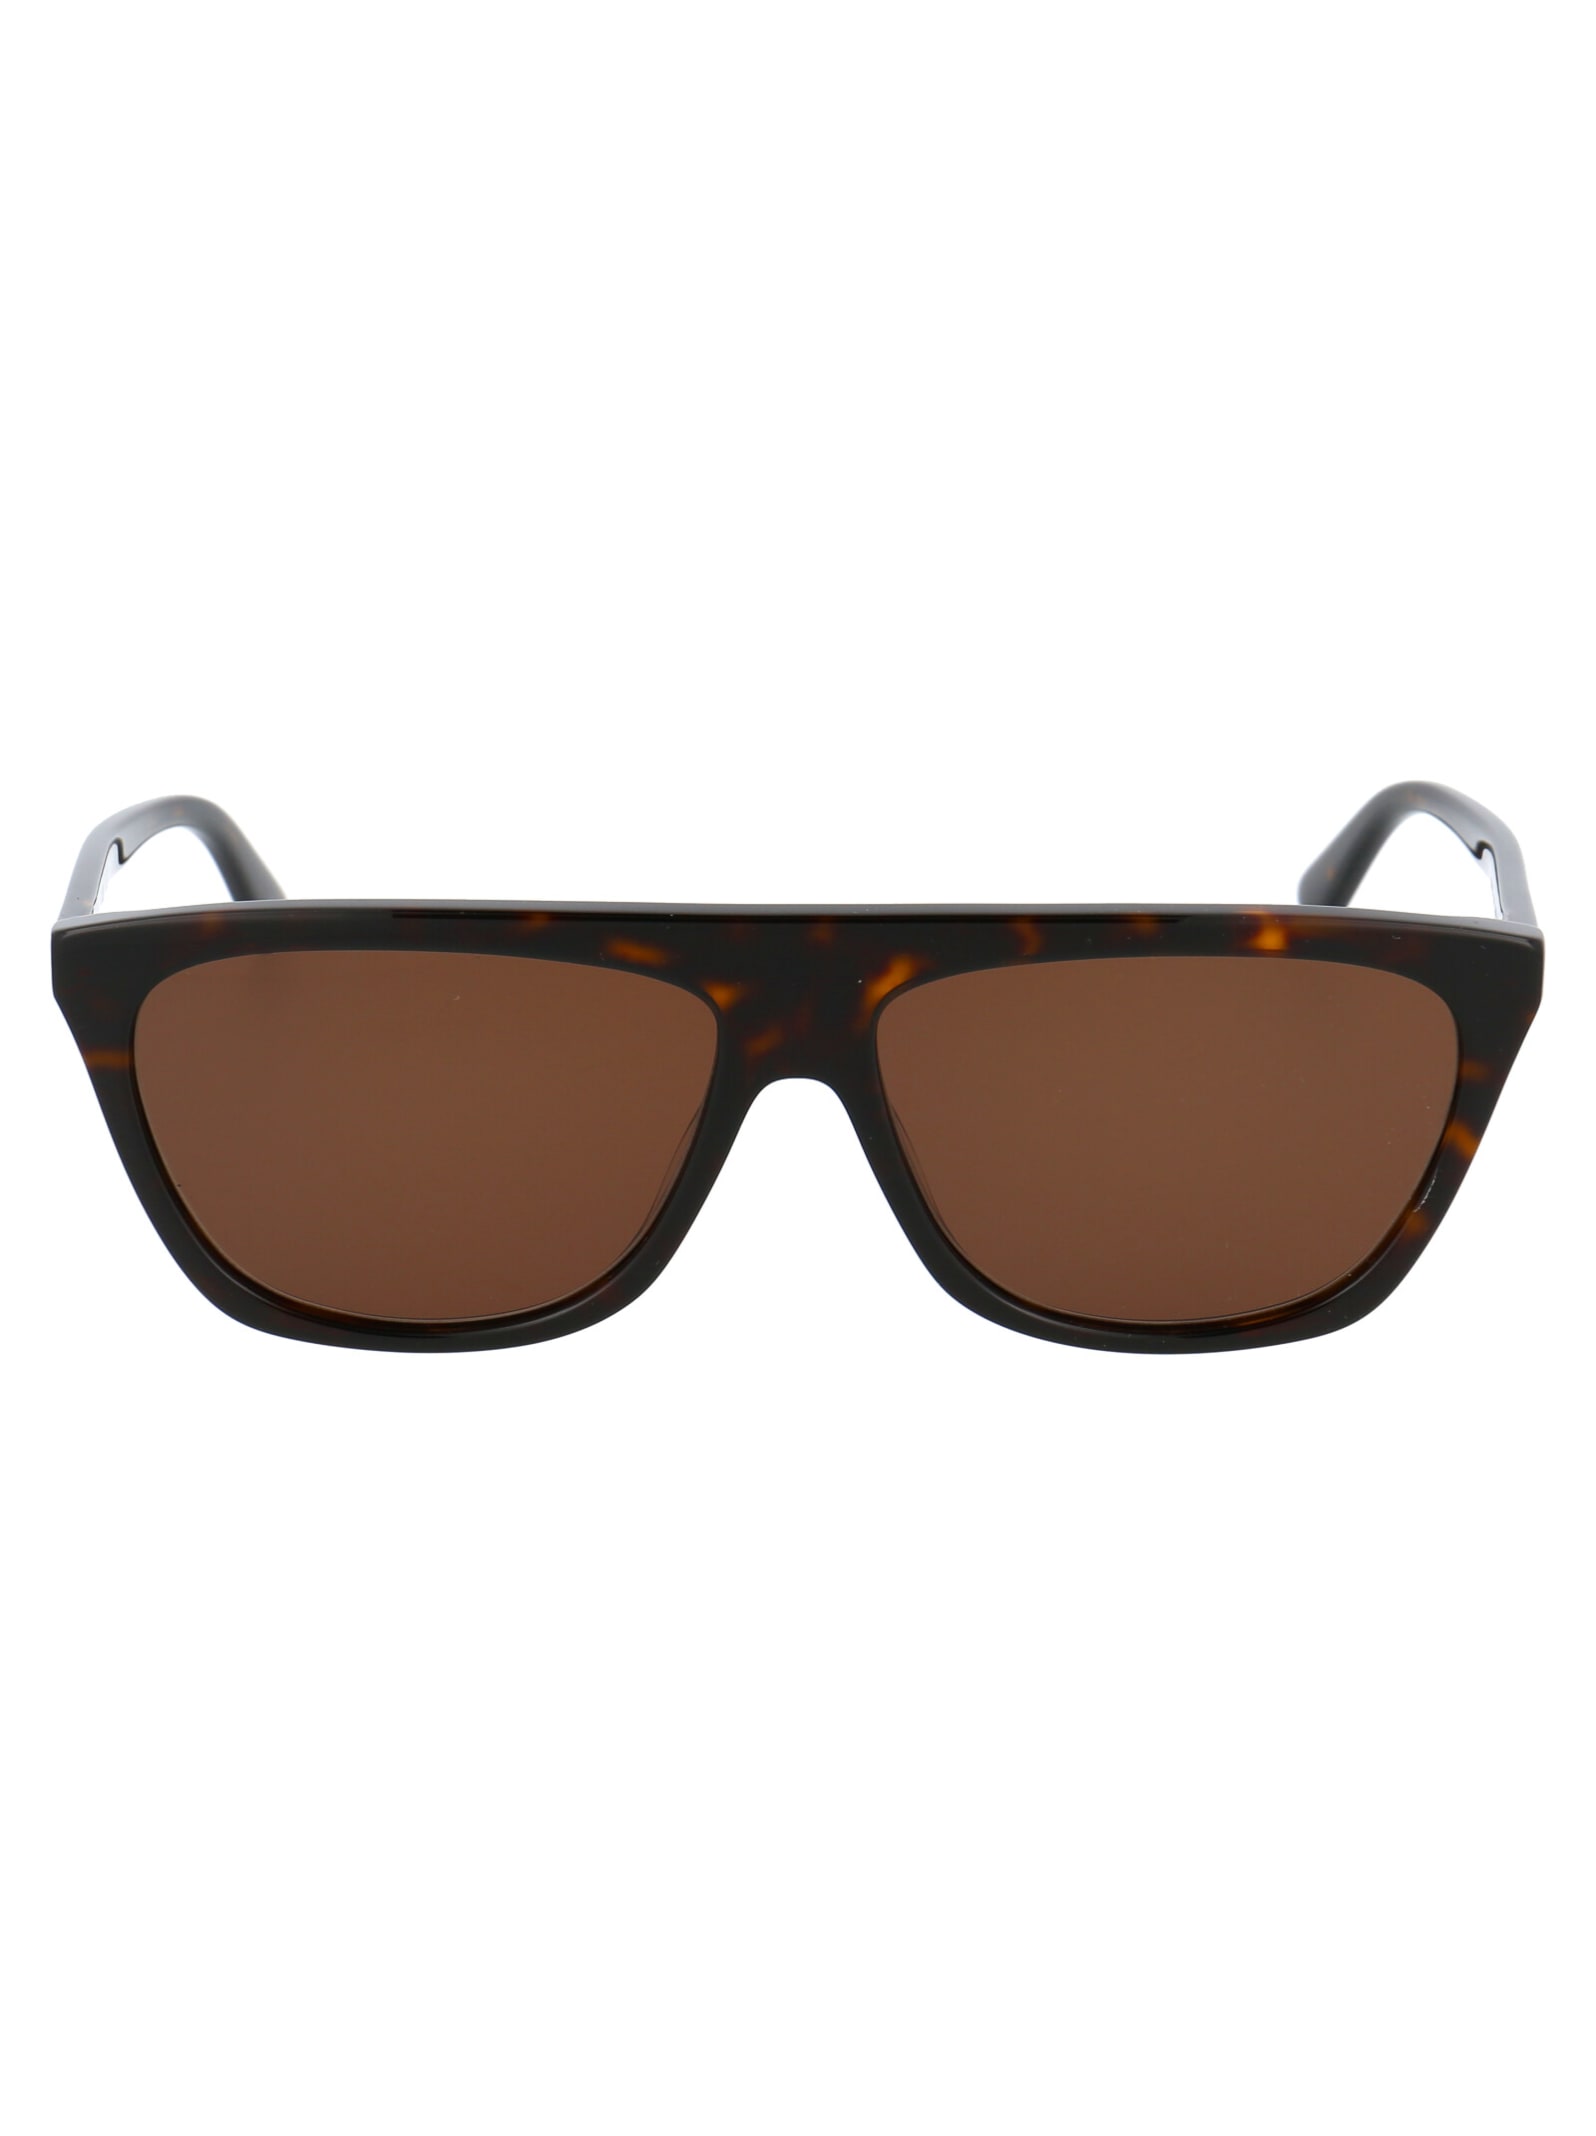 McQ Alexander McQueen Mq0273s Sunglasses